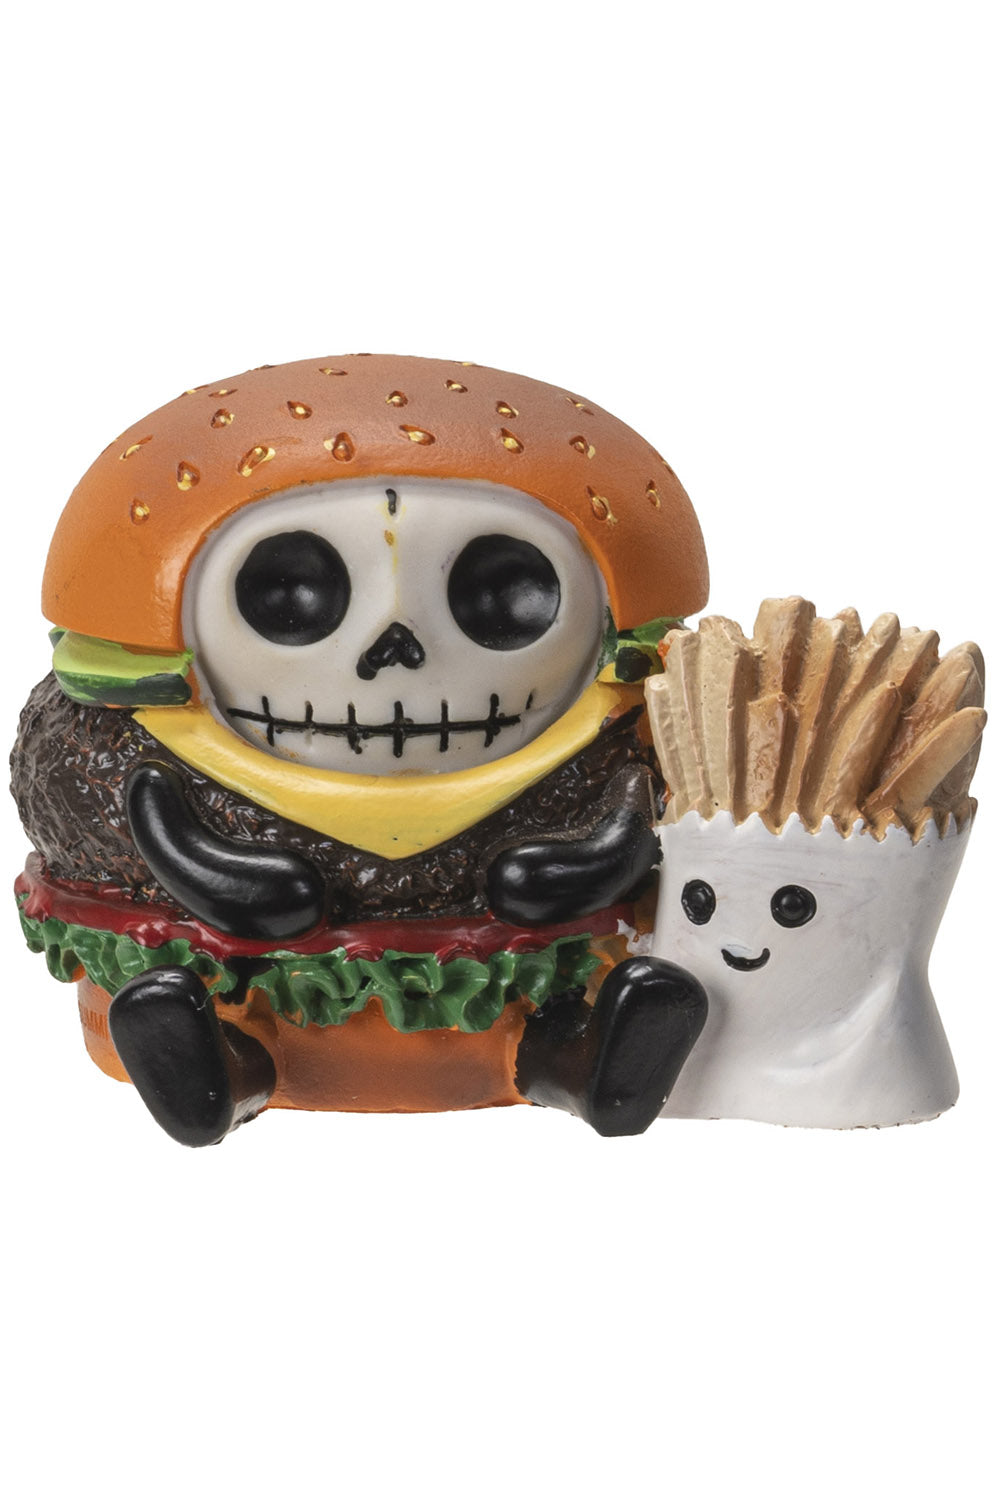 Burger the Big Dead Mac Statue